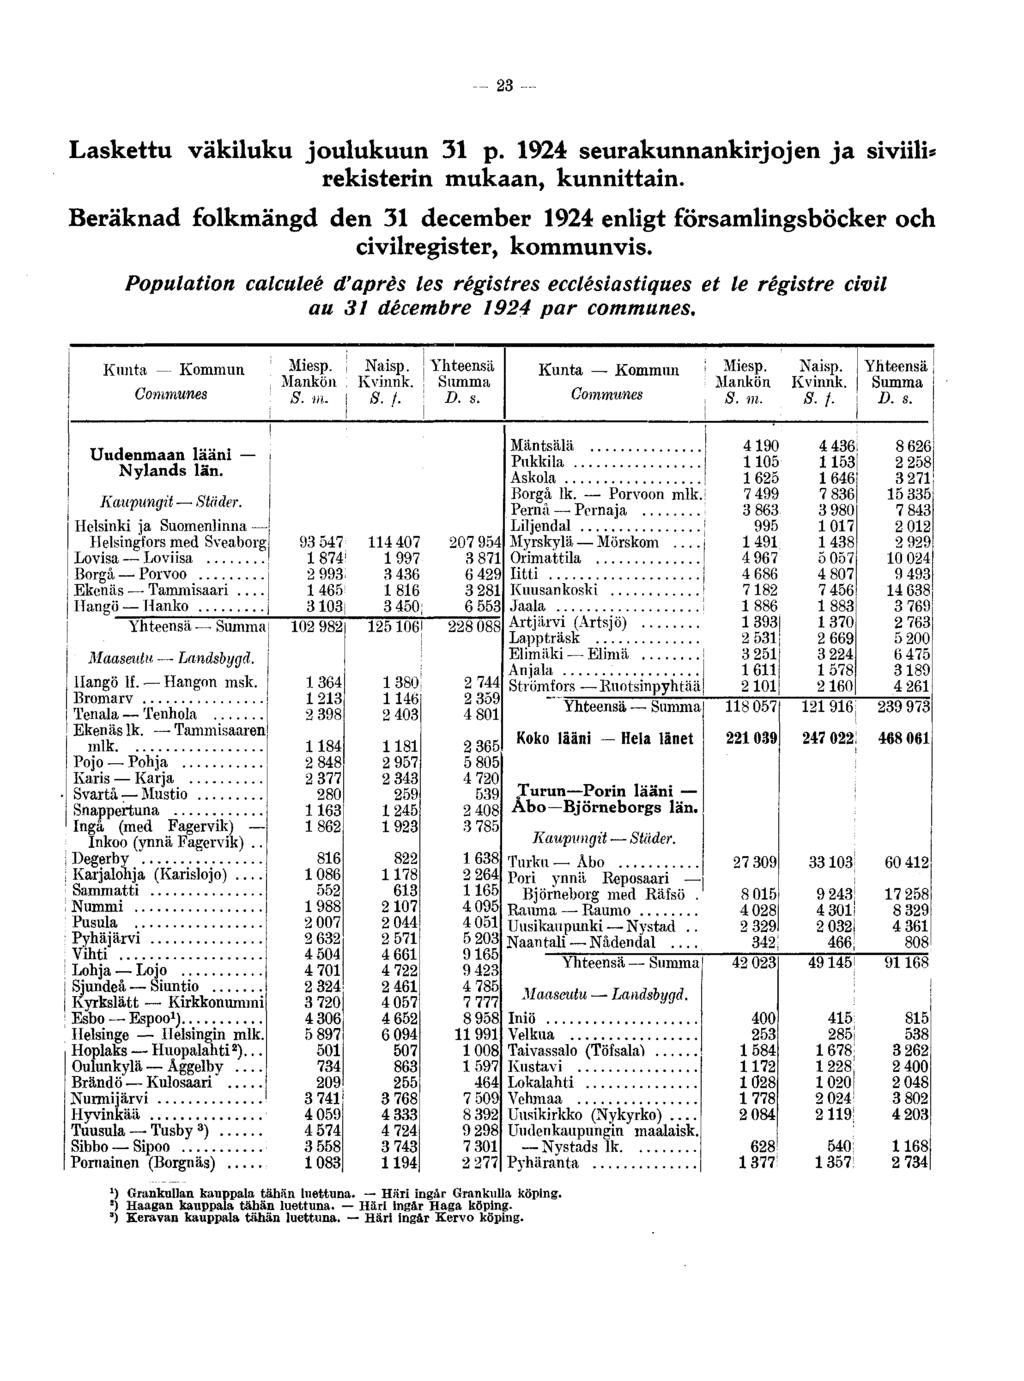 23 Laskettu väkiluku joulukuun 31 p. 1924 seurakunnankirjojen ja siviili* rekisterin mukaan, kunnittain. Beräknad folkmängd den 31 december 1924 enligt församlingsböcker och civilregister, kommunvis.